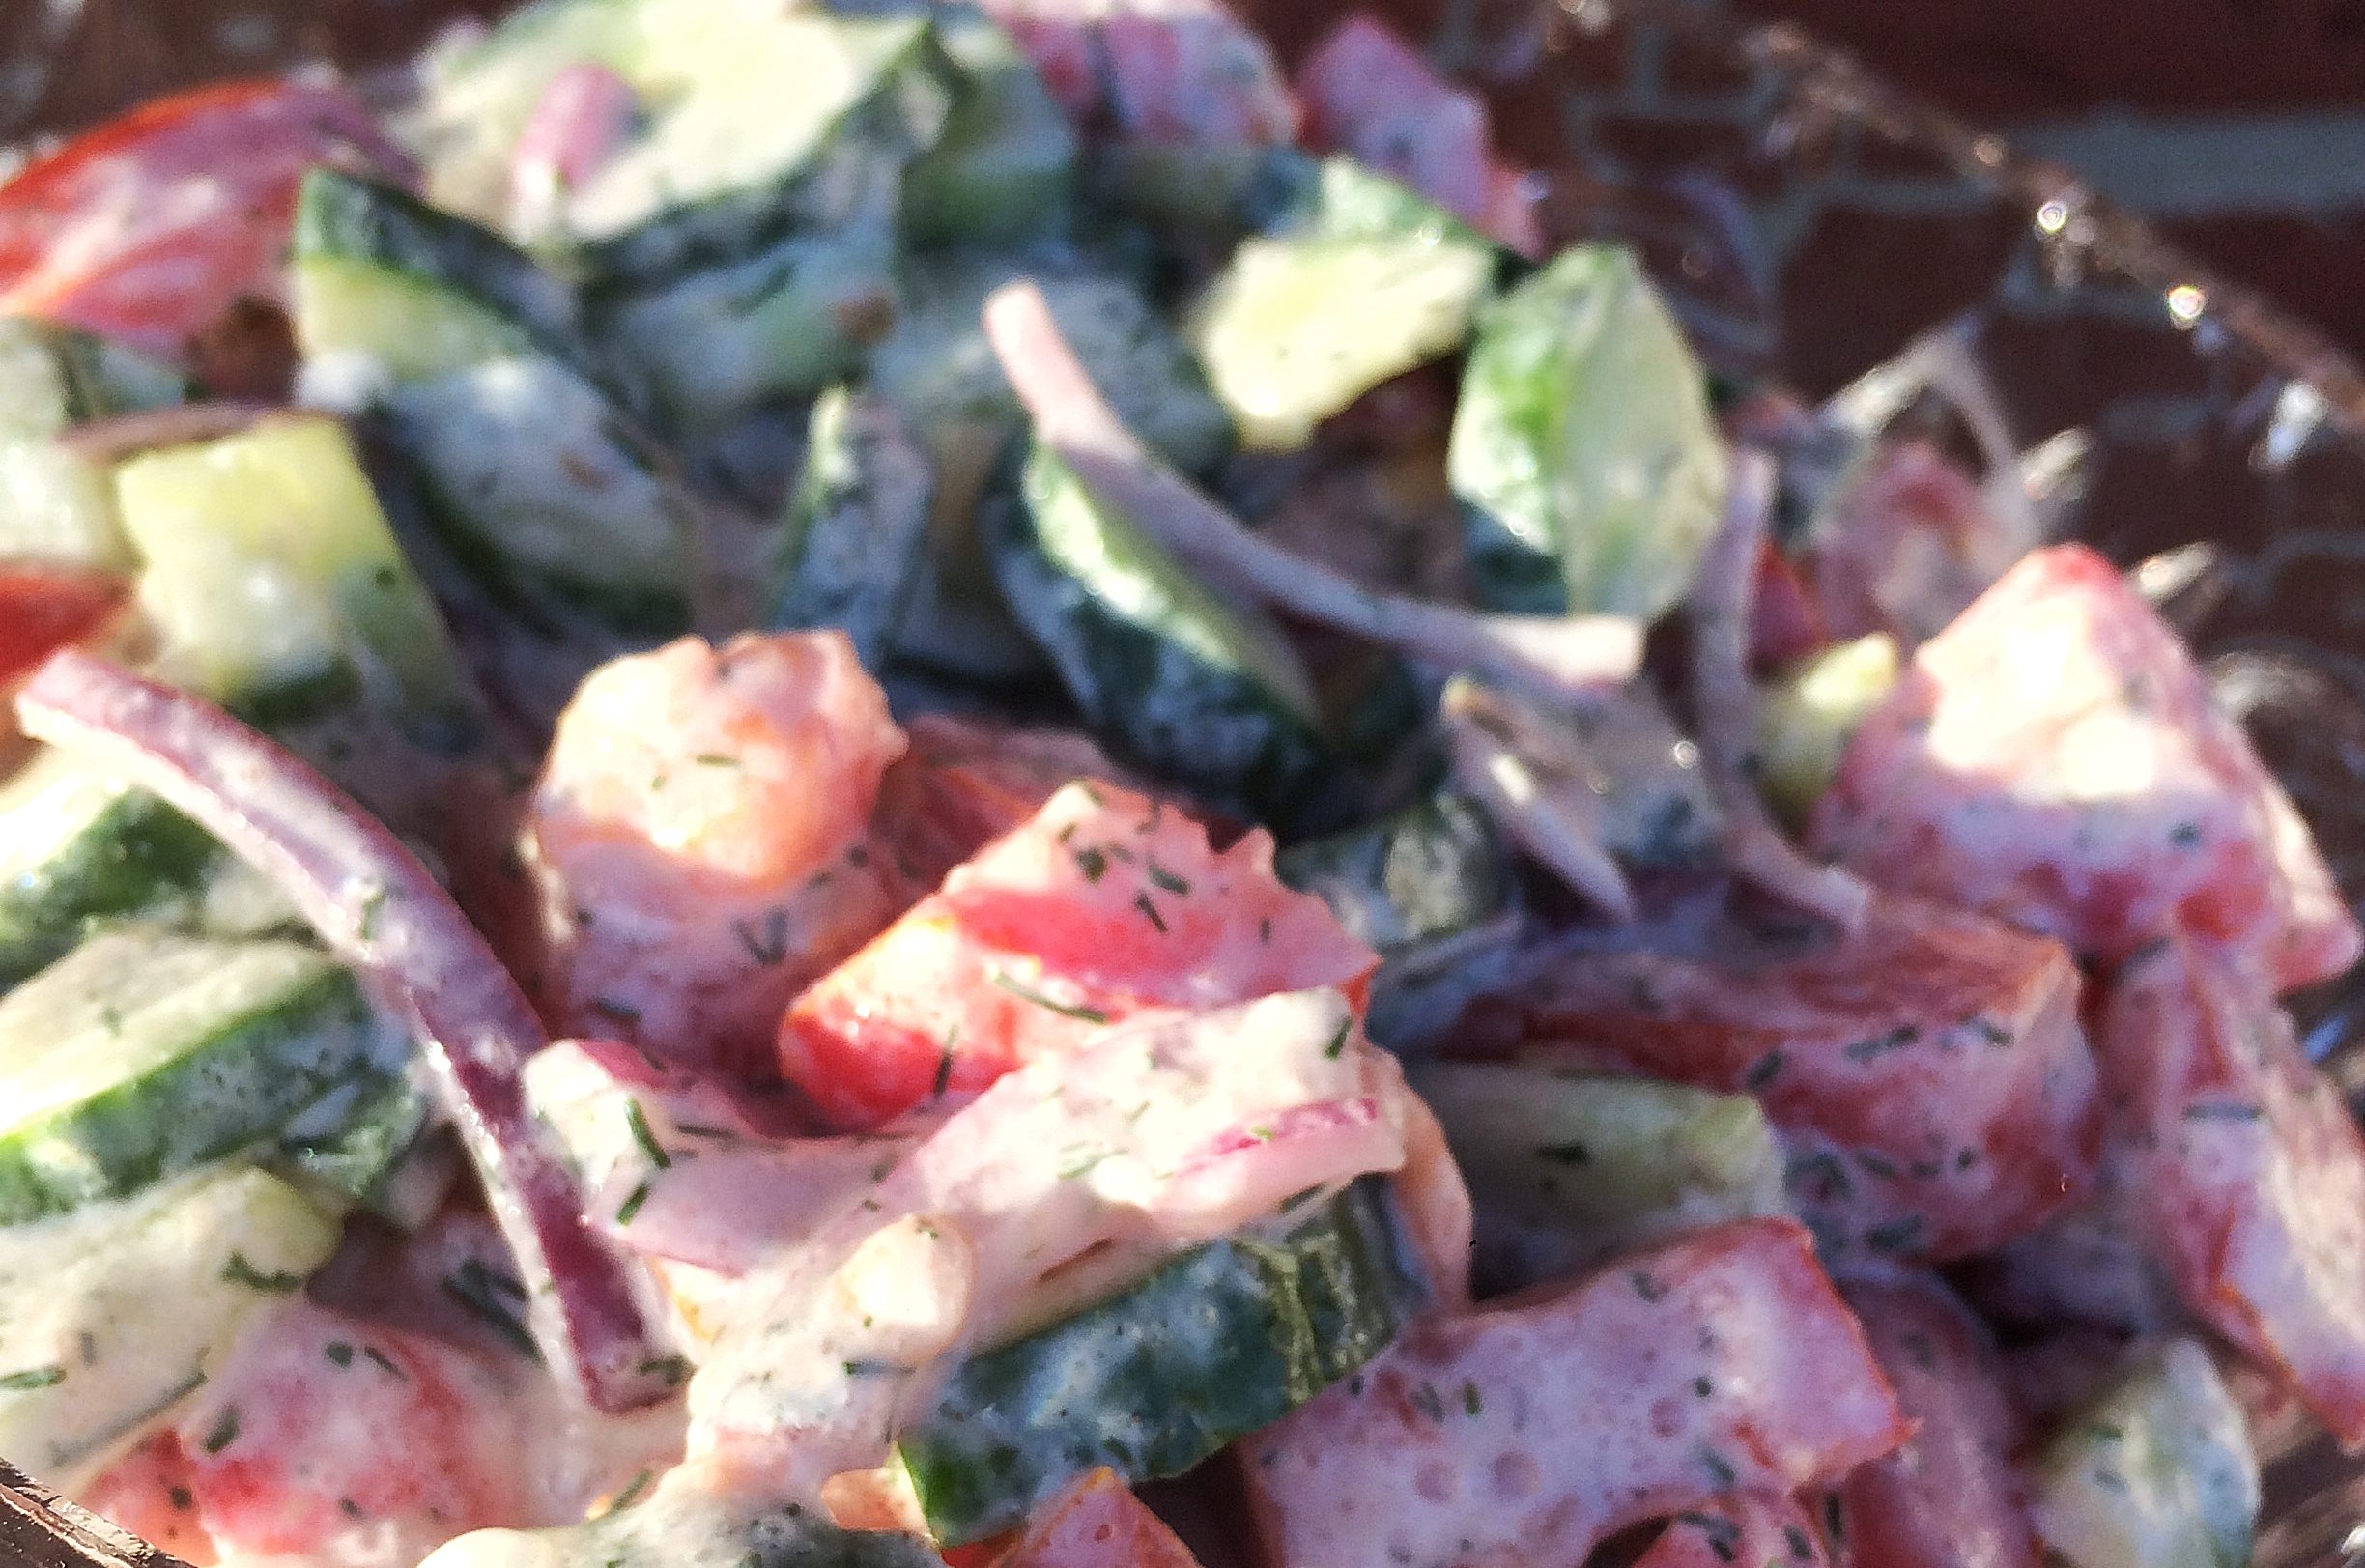 Salat Rezept für Grillen - zum selber machen! - Foodblog Mr.Nicefood